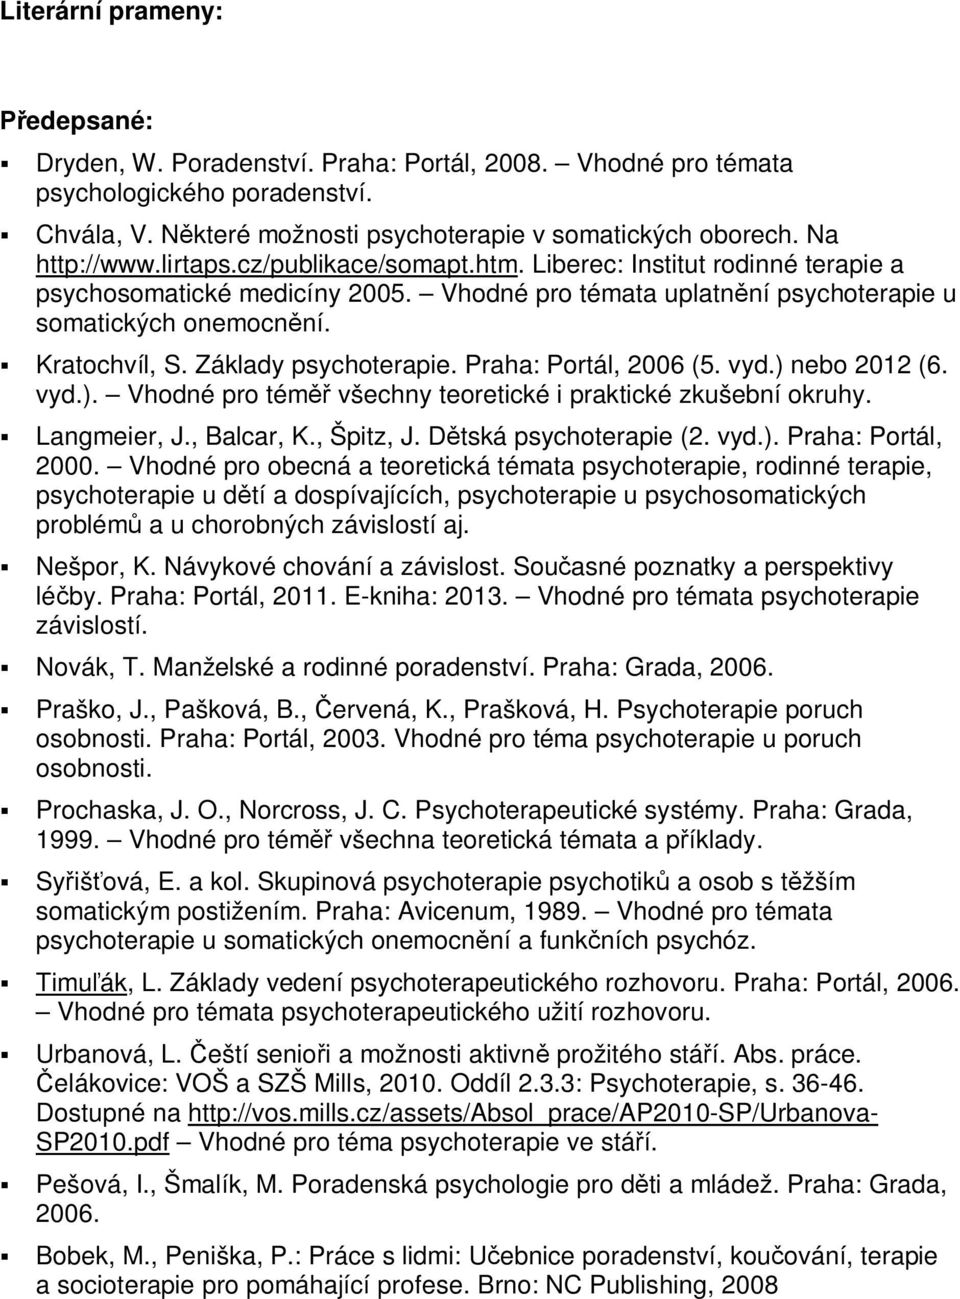 Základy psychoterapie. Praha: Portál, 2006 (5. vyd.) nebo 2012 (6. vyd.). Vhodné pro téměř všechny teoretické i praktické zkušební okruhy. Langmeier, J., Balcar, K., Špitz, J. Dětská psychoterapie (2.